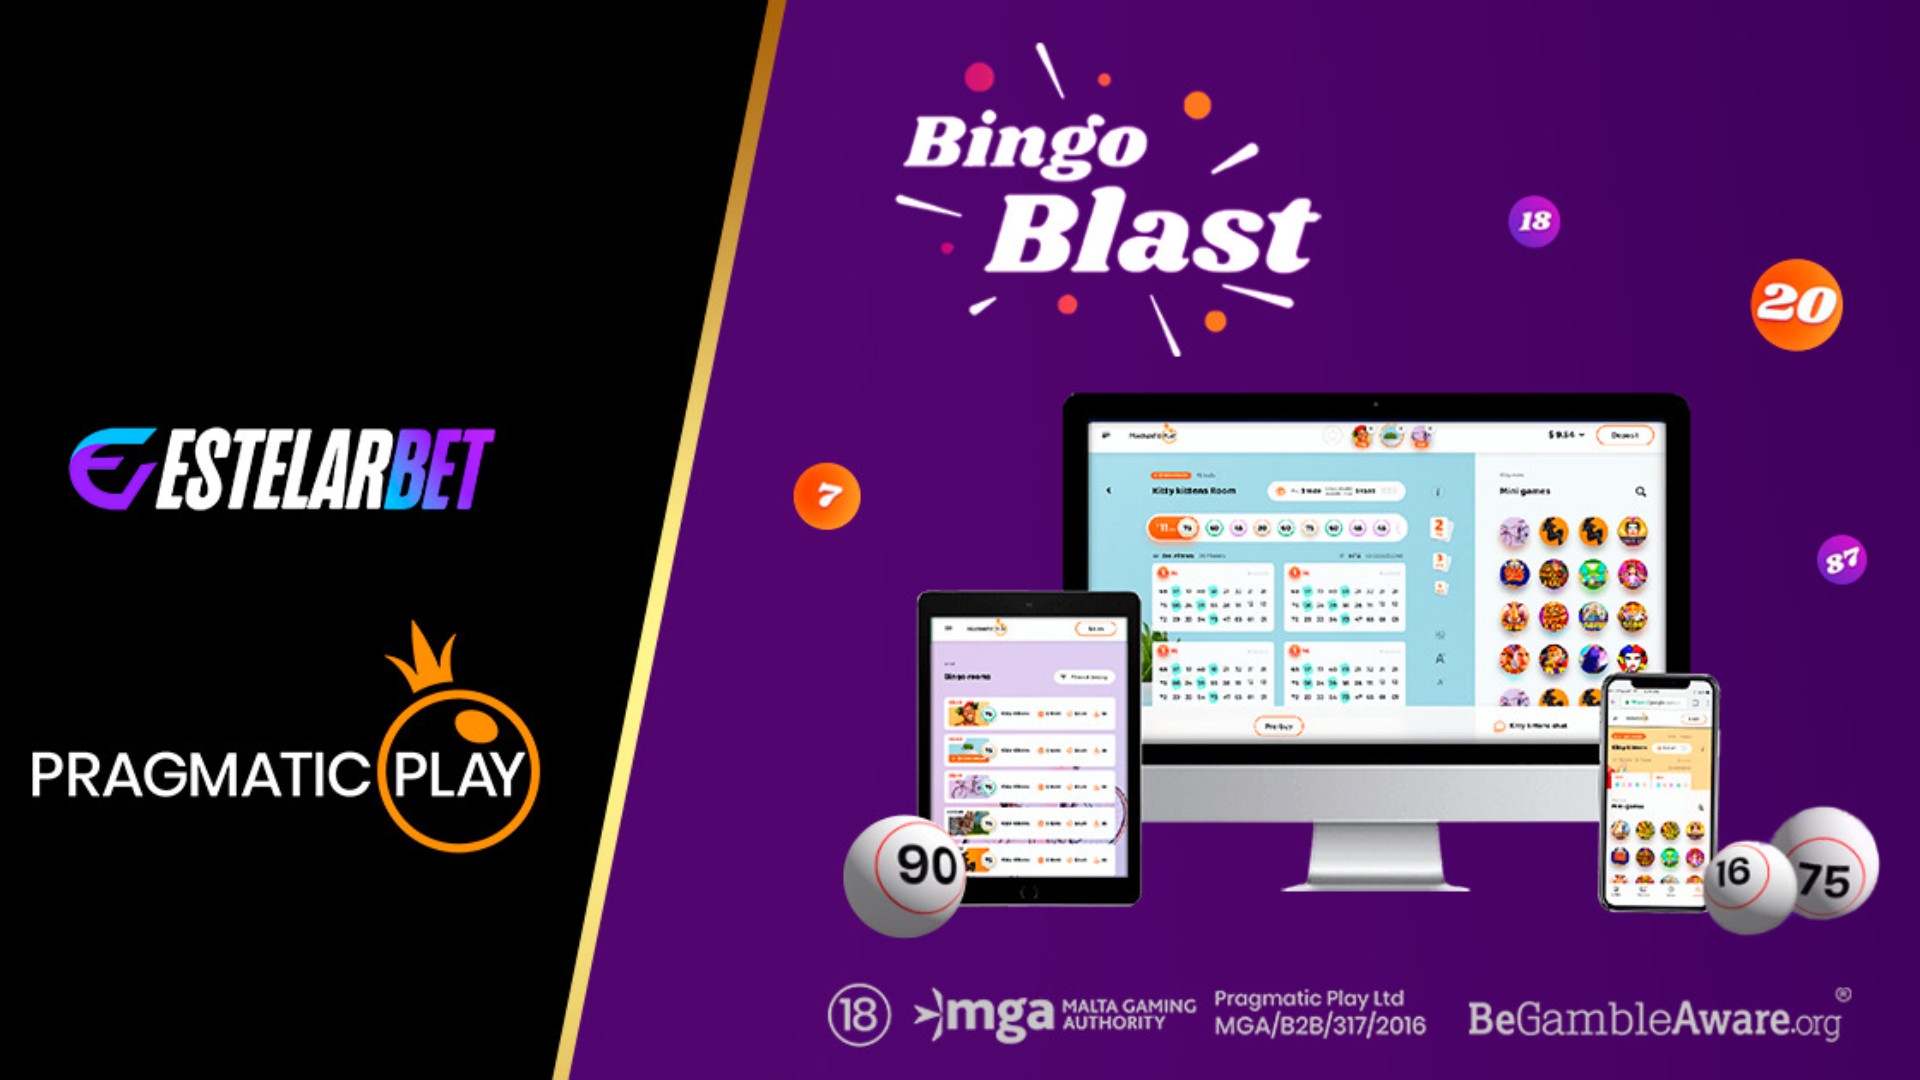 Bingo vertical é resultado de uma parceria da Pragmatic Play e da Estelarbet no Brasil e no Chile.